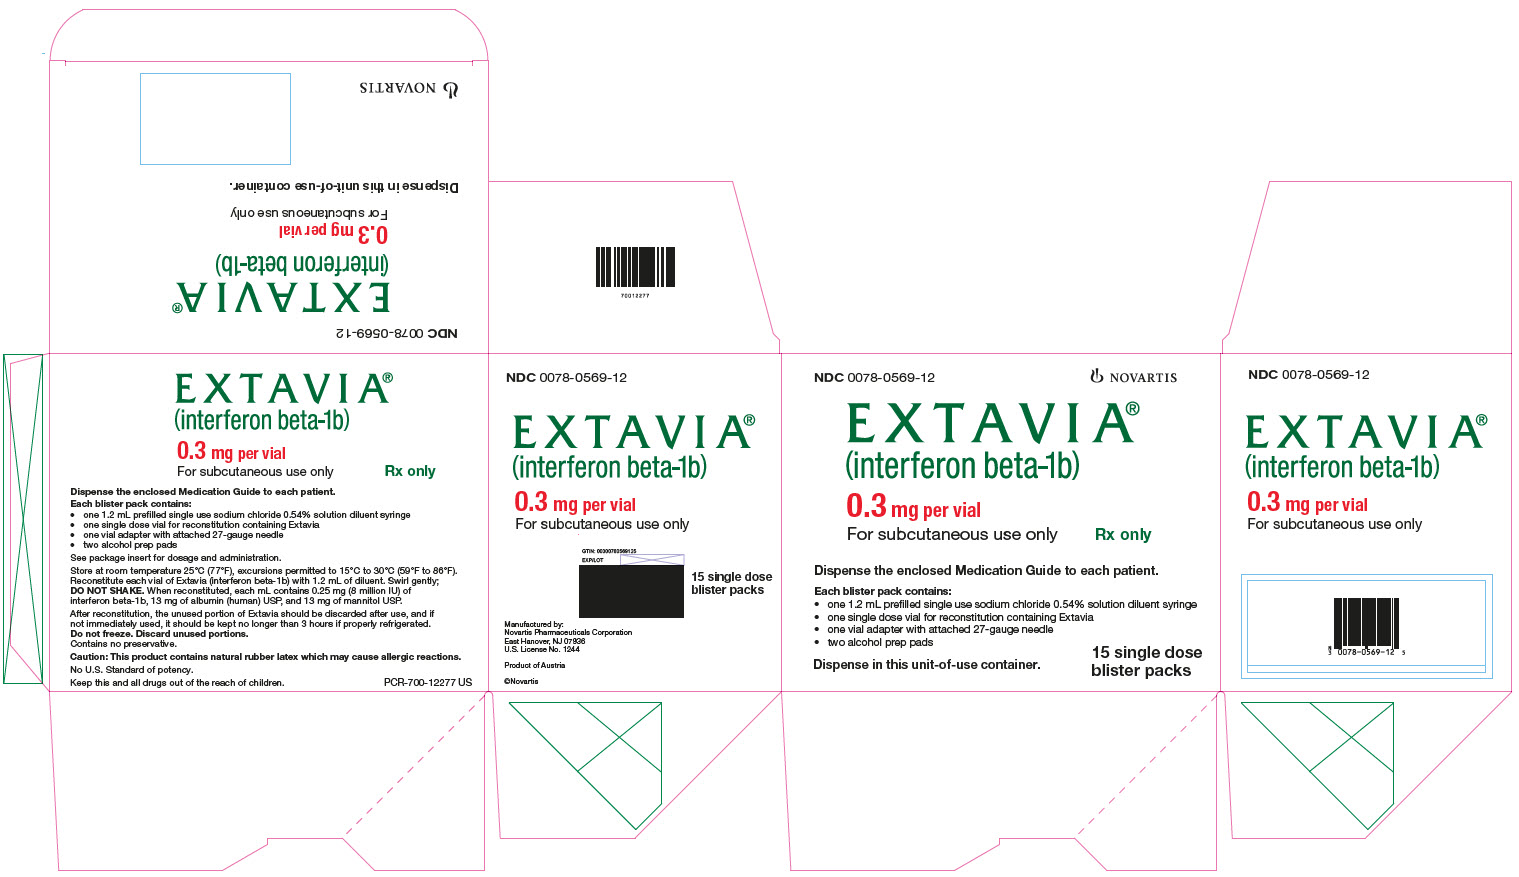 PRINCIPAL DISPLAY PANEL
									EXTAVIA
									(interferon beta-1b)
									0.3 mg per vial
									For subcutaneous use only
							